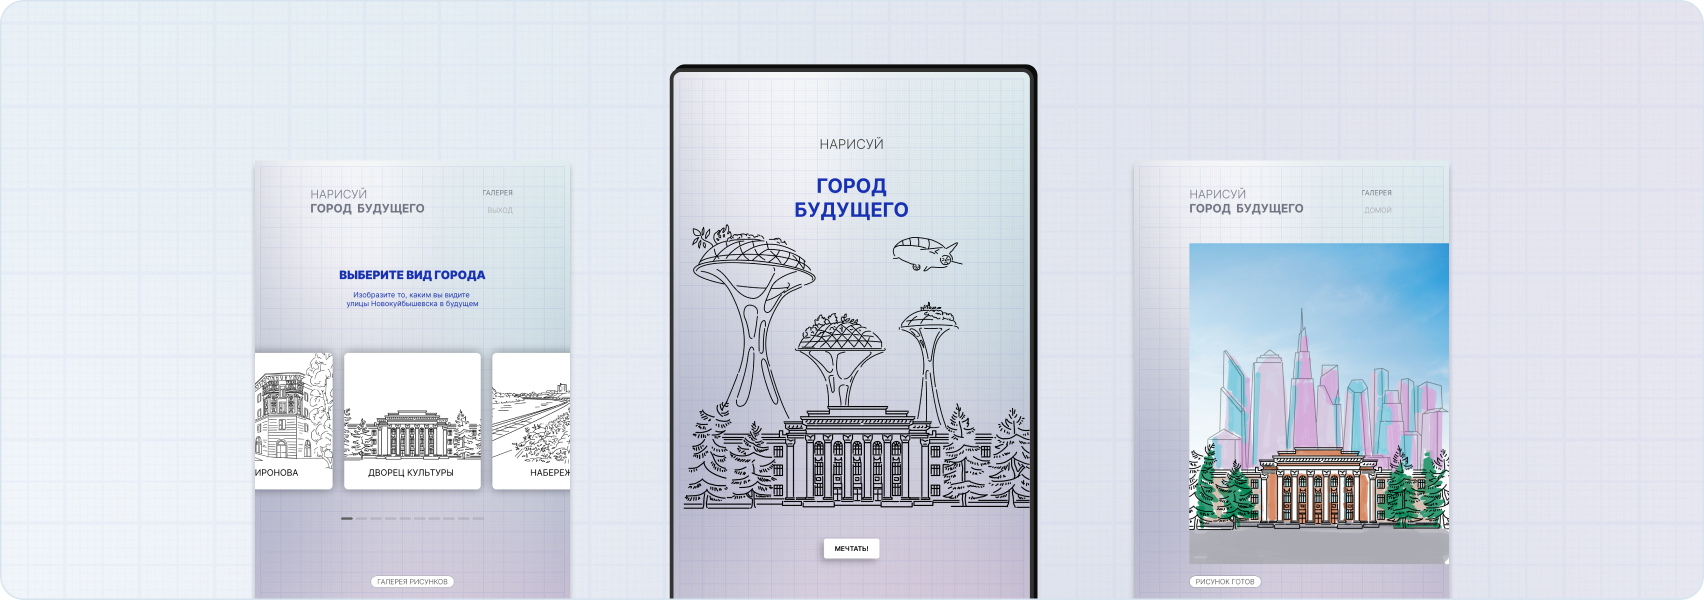 Нарисуй город будущего. Интерактив для музея Новокуйбышевска